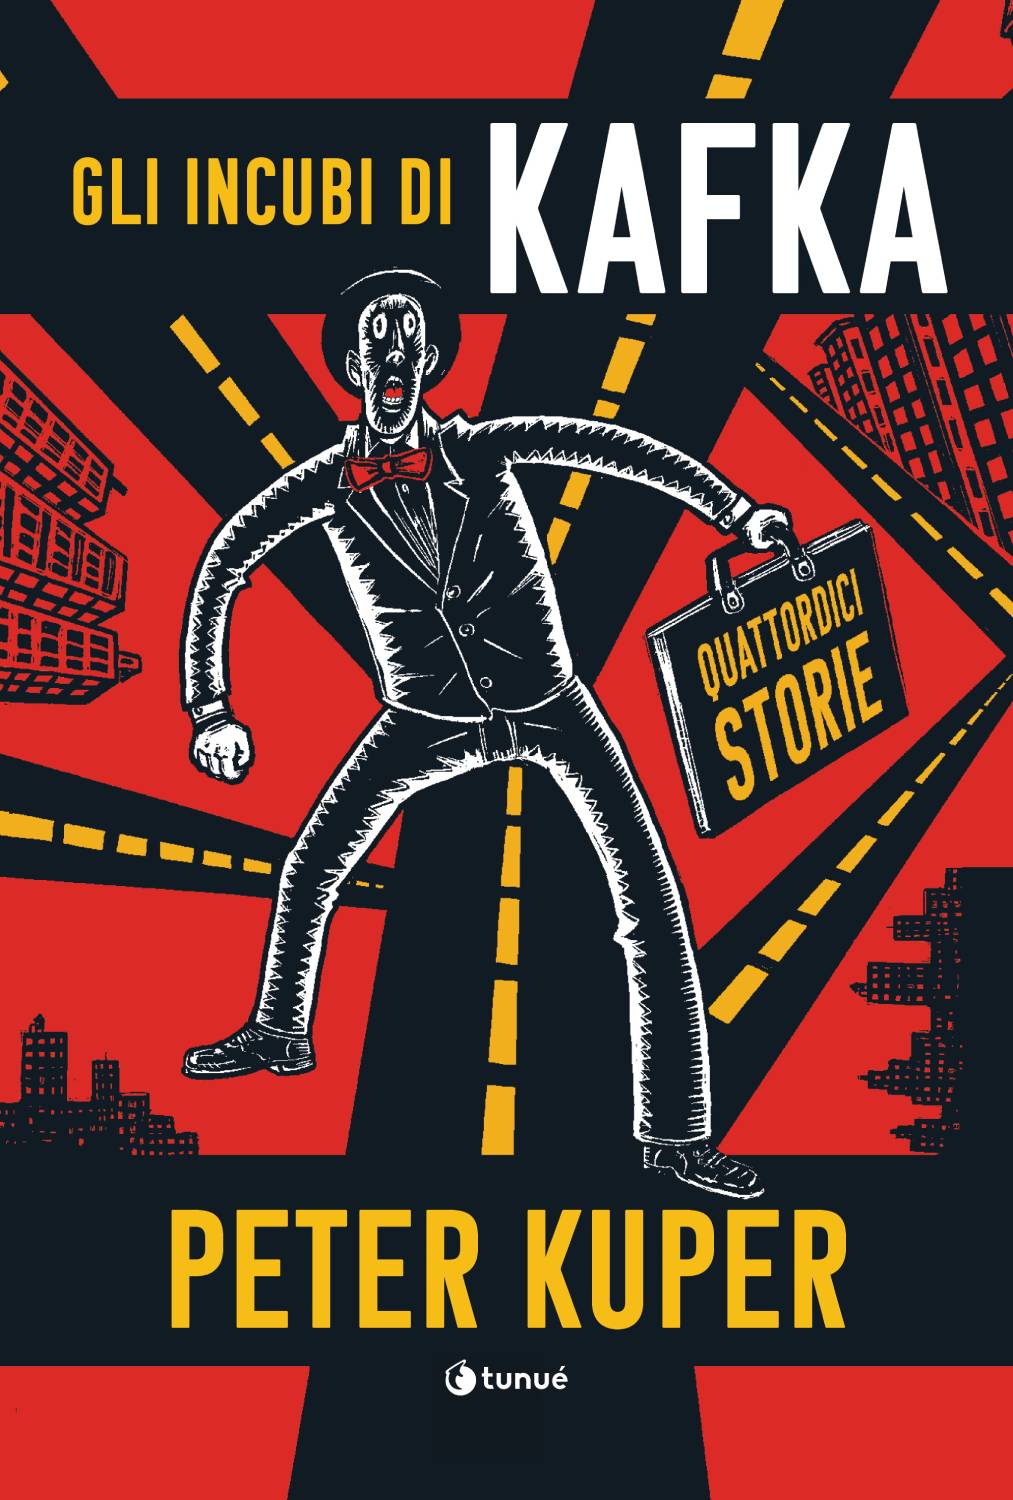 “Gli incubi di Kafka”, di Peter Kuper (Tunué)